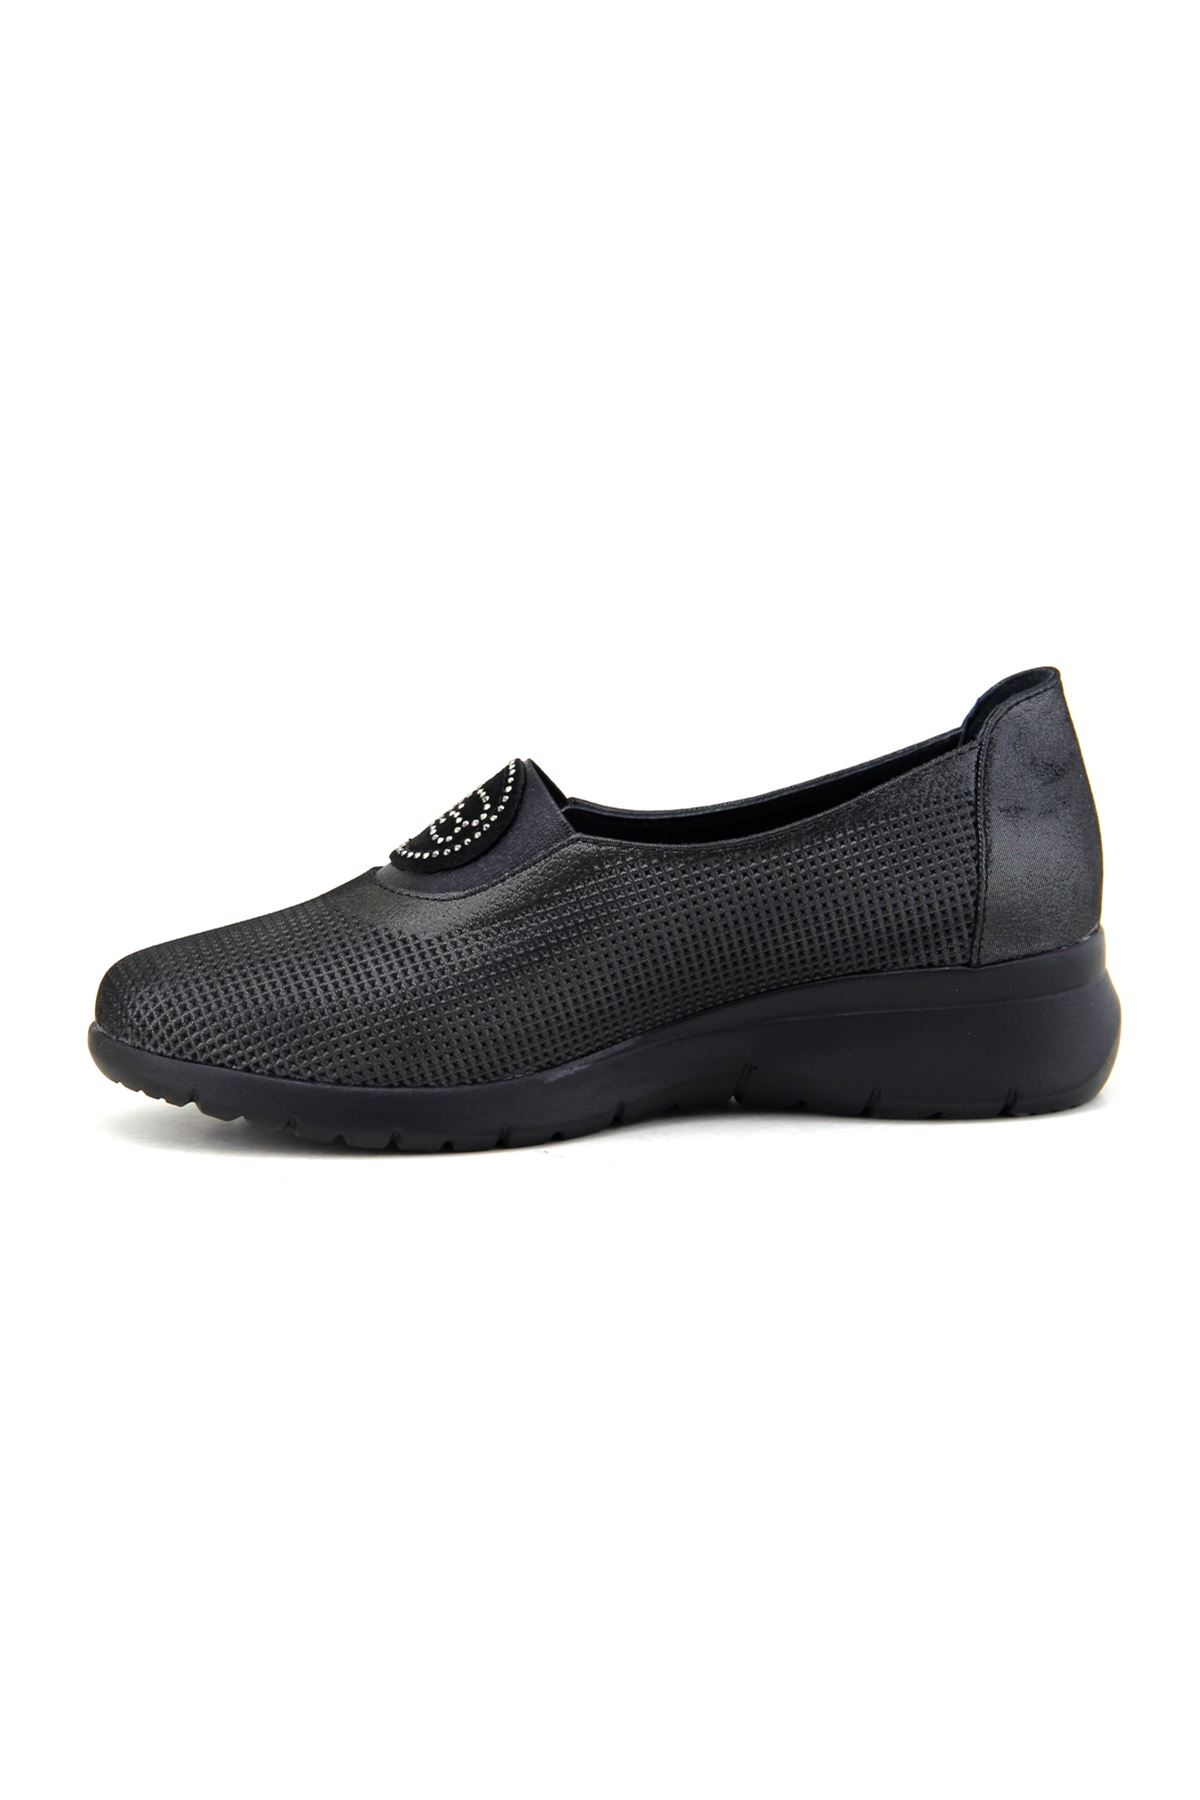 Mammamia D23YA-470 Hakiki Deri Kadın Ayakkabı - Siyah Çelik